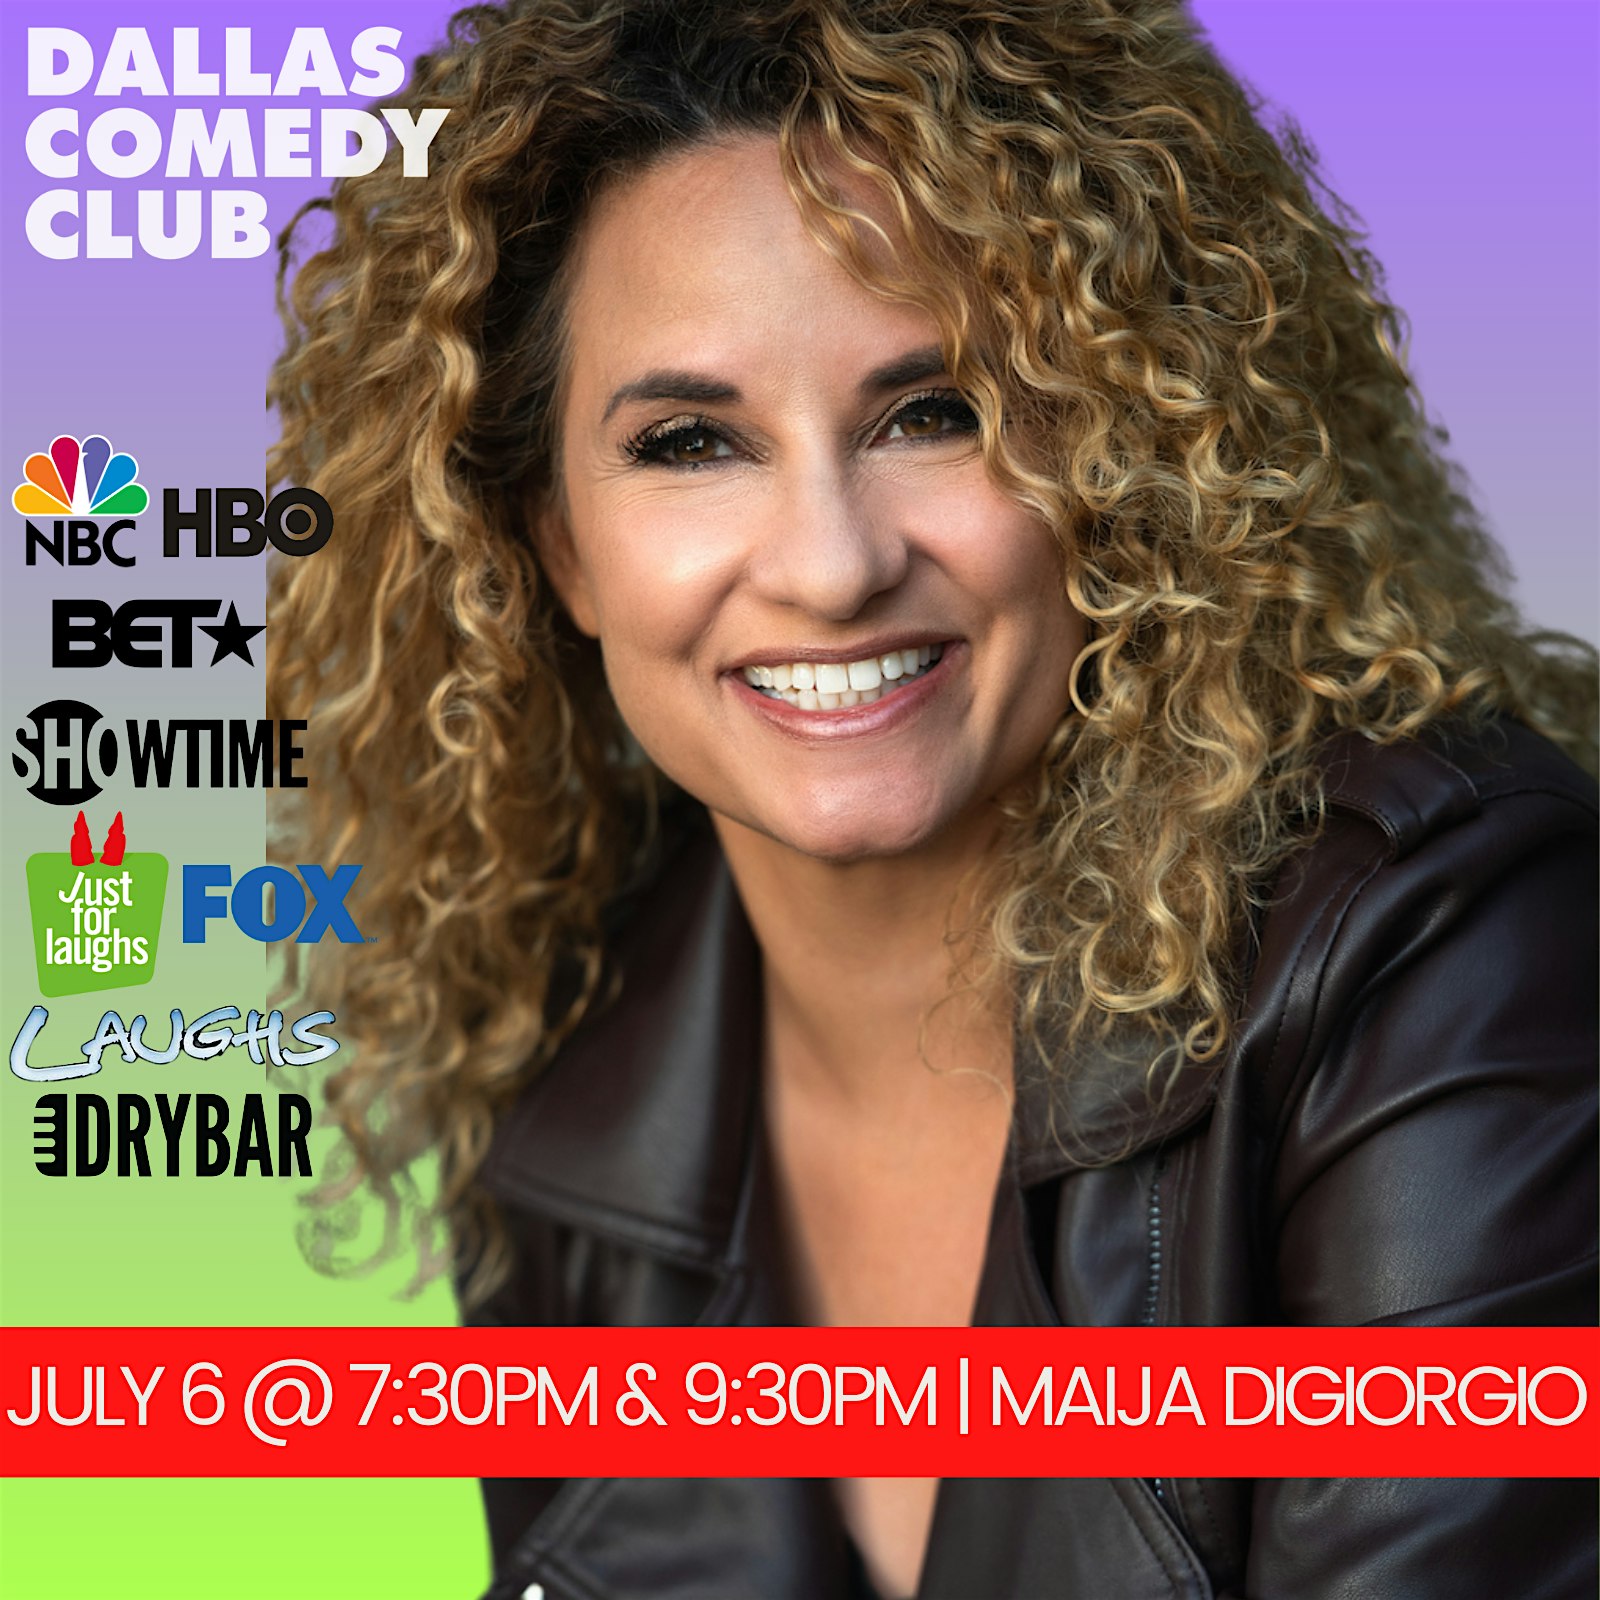 Dallas Comedy Club Presents: MAIJA DIGIORGIO